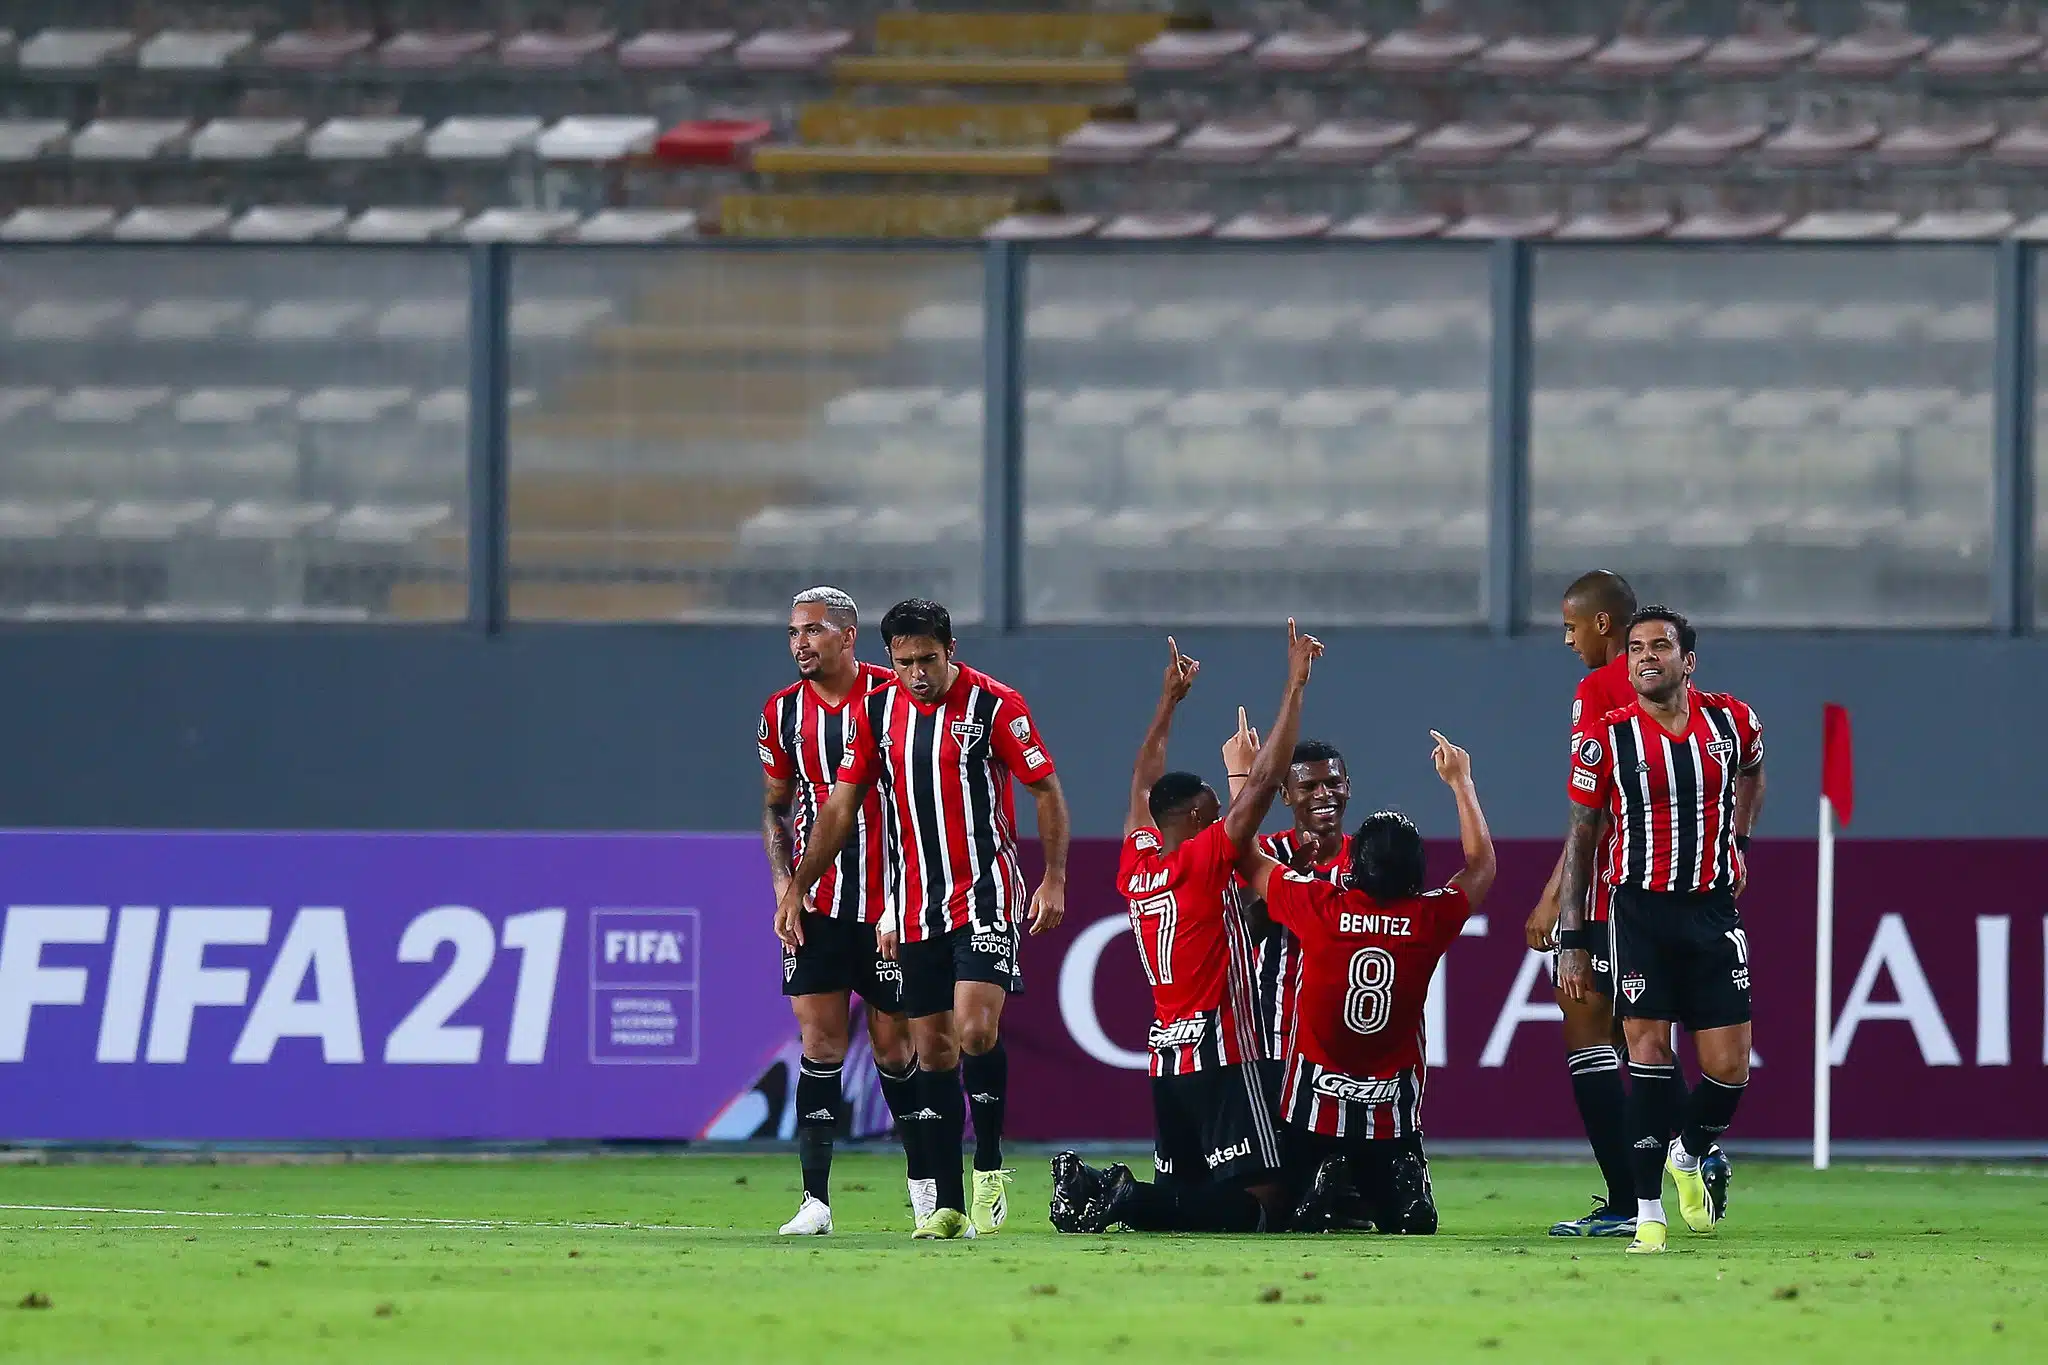 São Paulo lidera grupo E da Libertadores. Veja a classificação